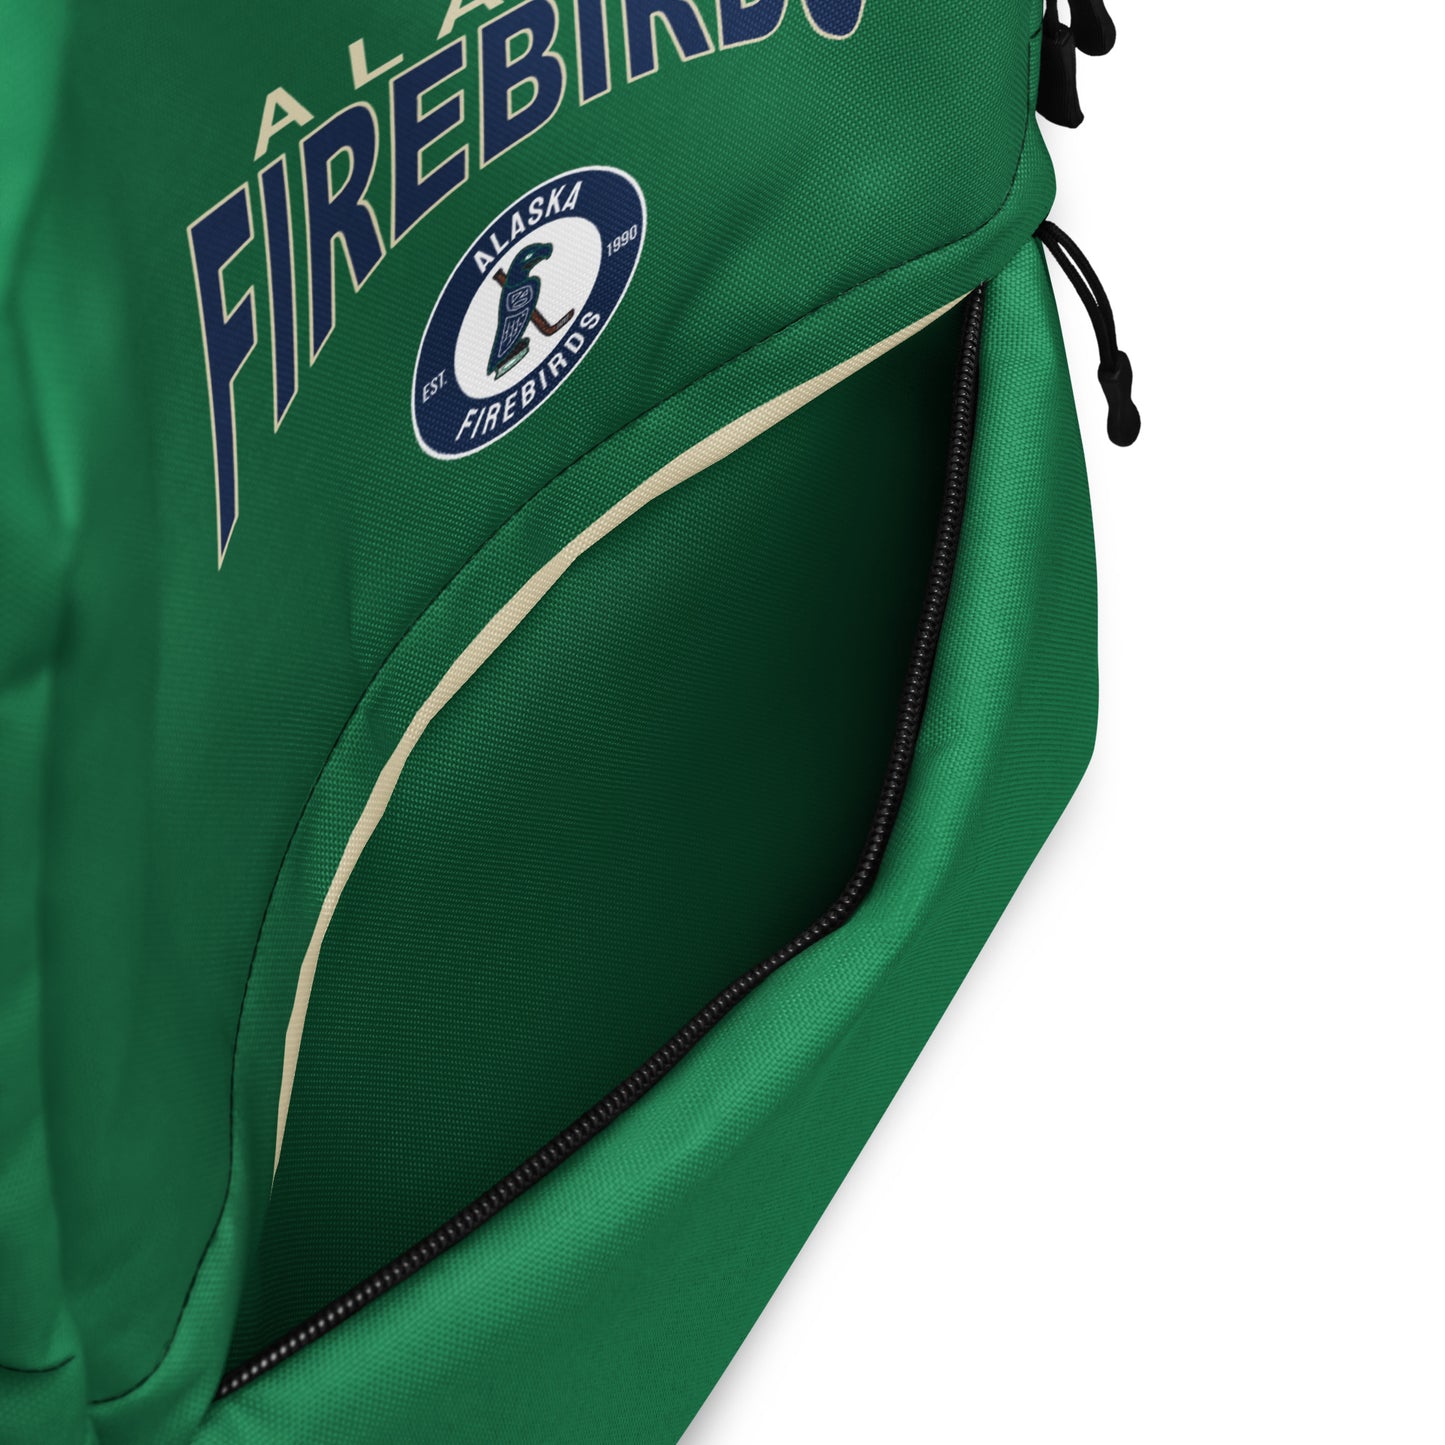 Alaska Firebirds 2024 Backpack